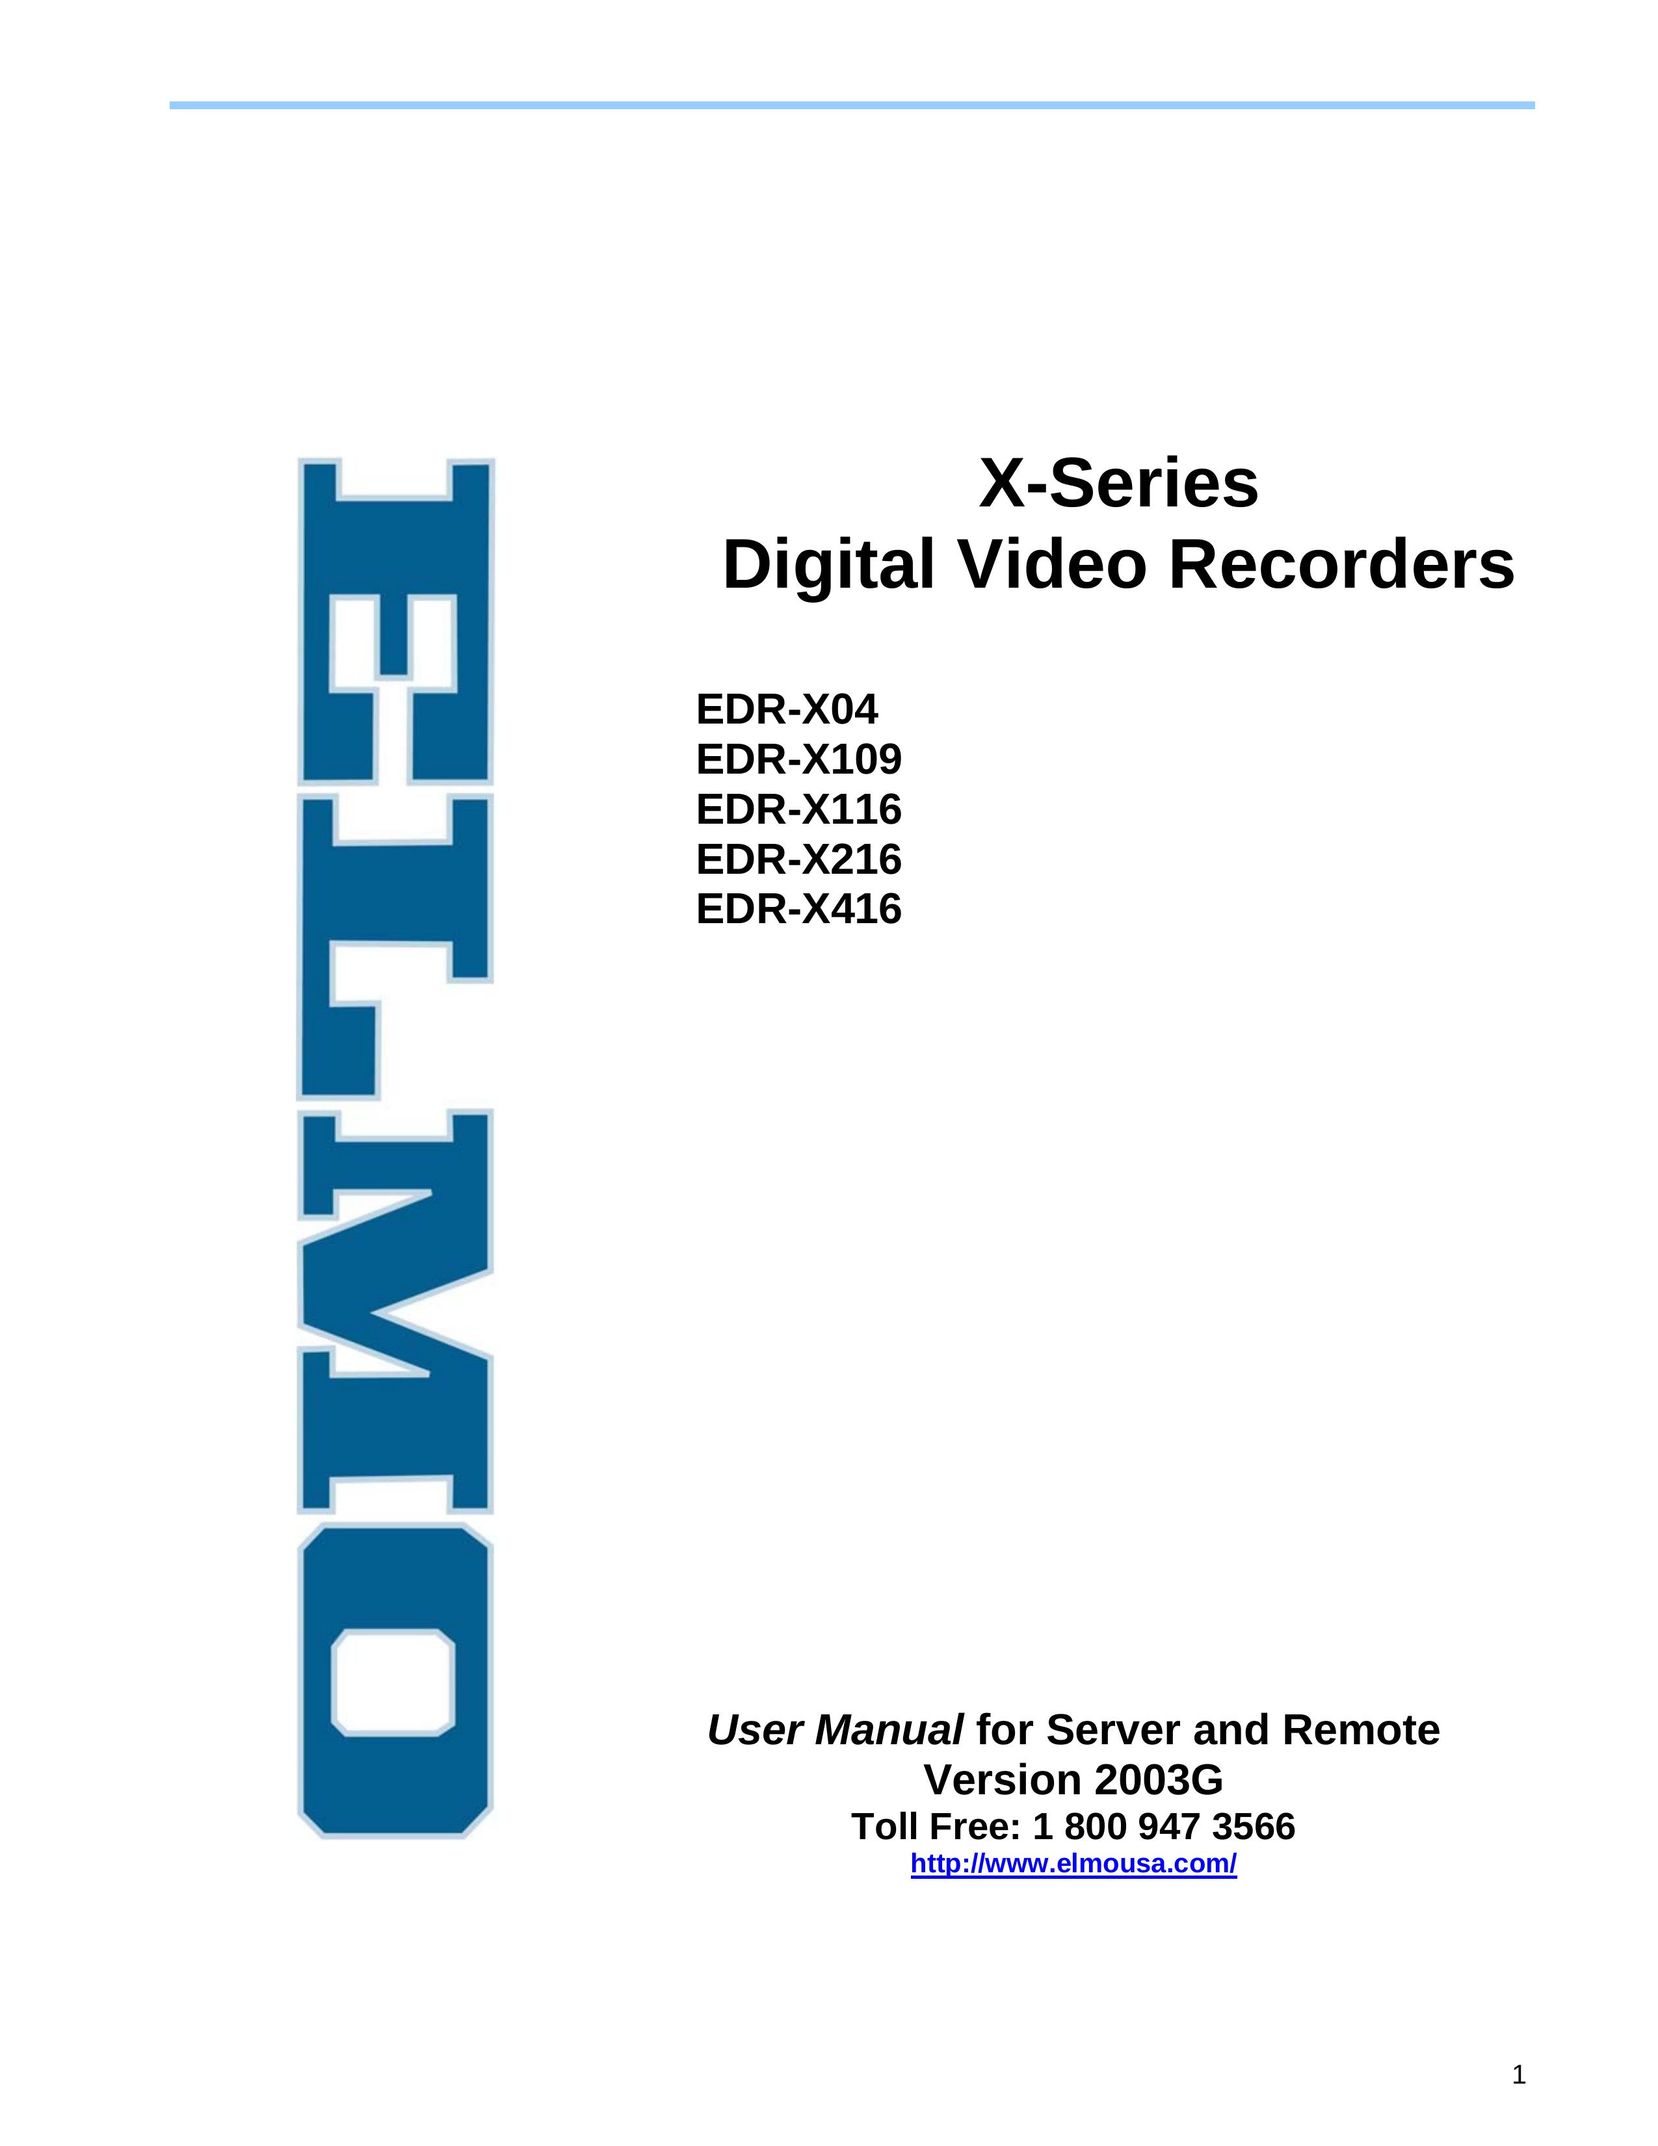 Elmo EDR-X216 DVR User Manual